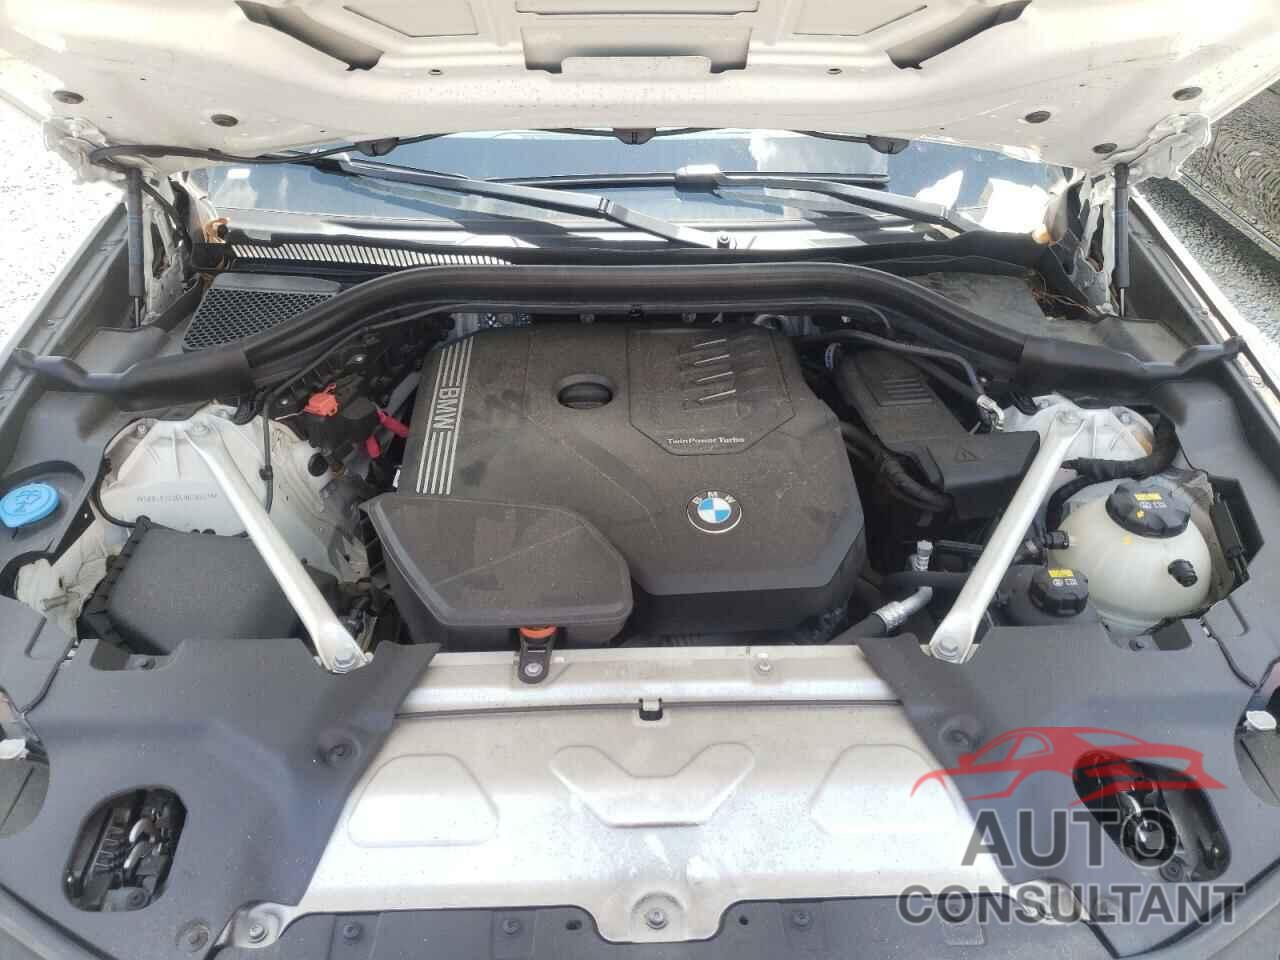 BMW X3 2020 - 5UXTY3C06L9B70321